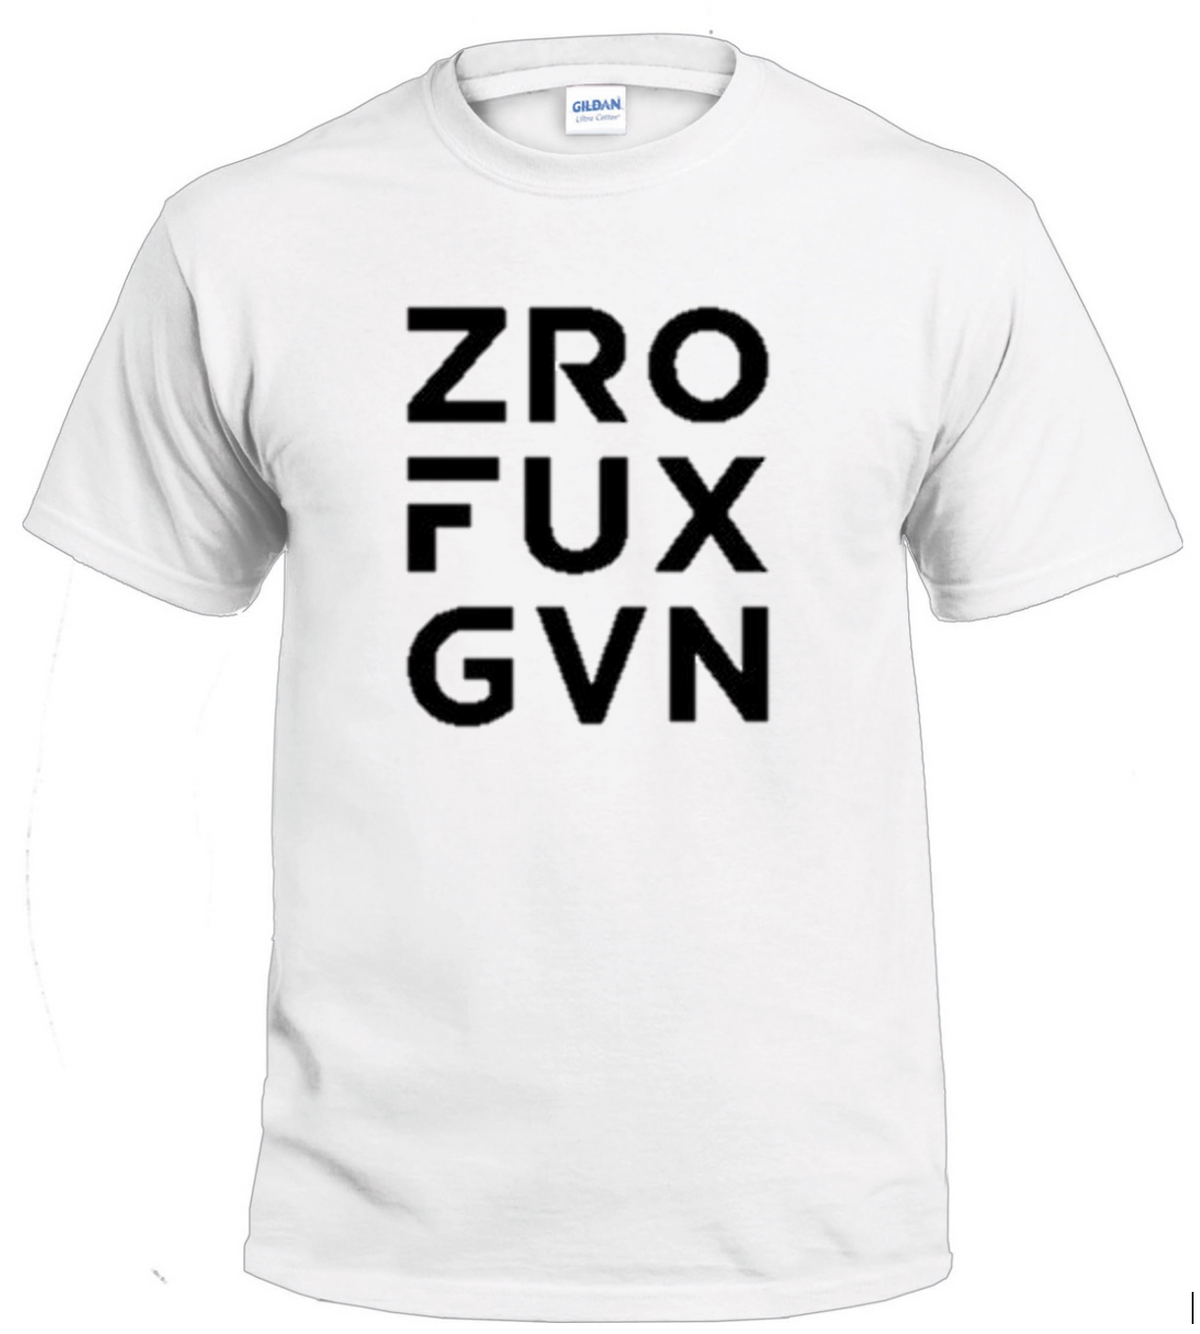 ZRO FUX GVN Sassy t-shirt